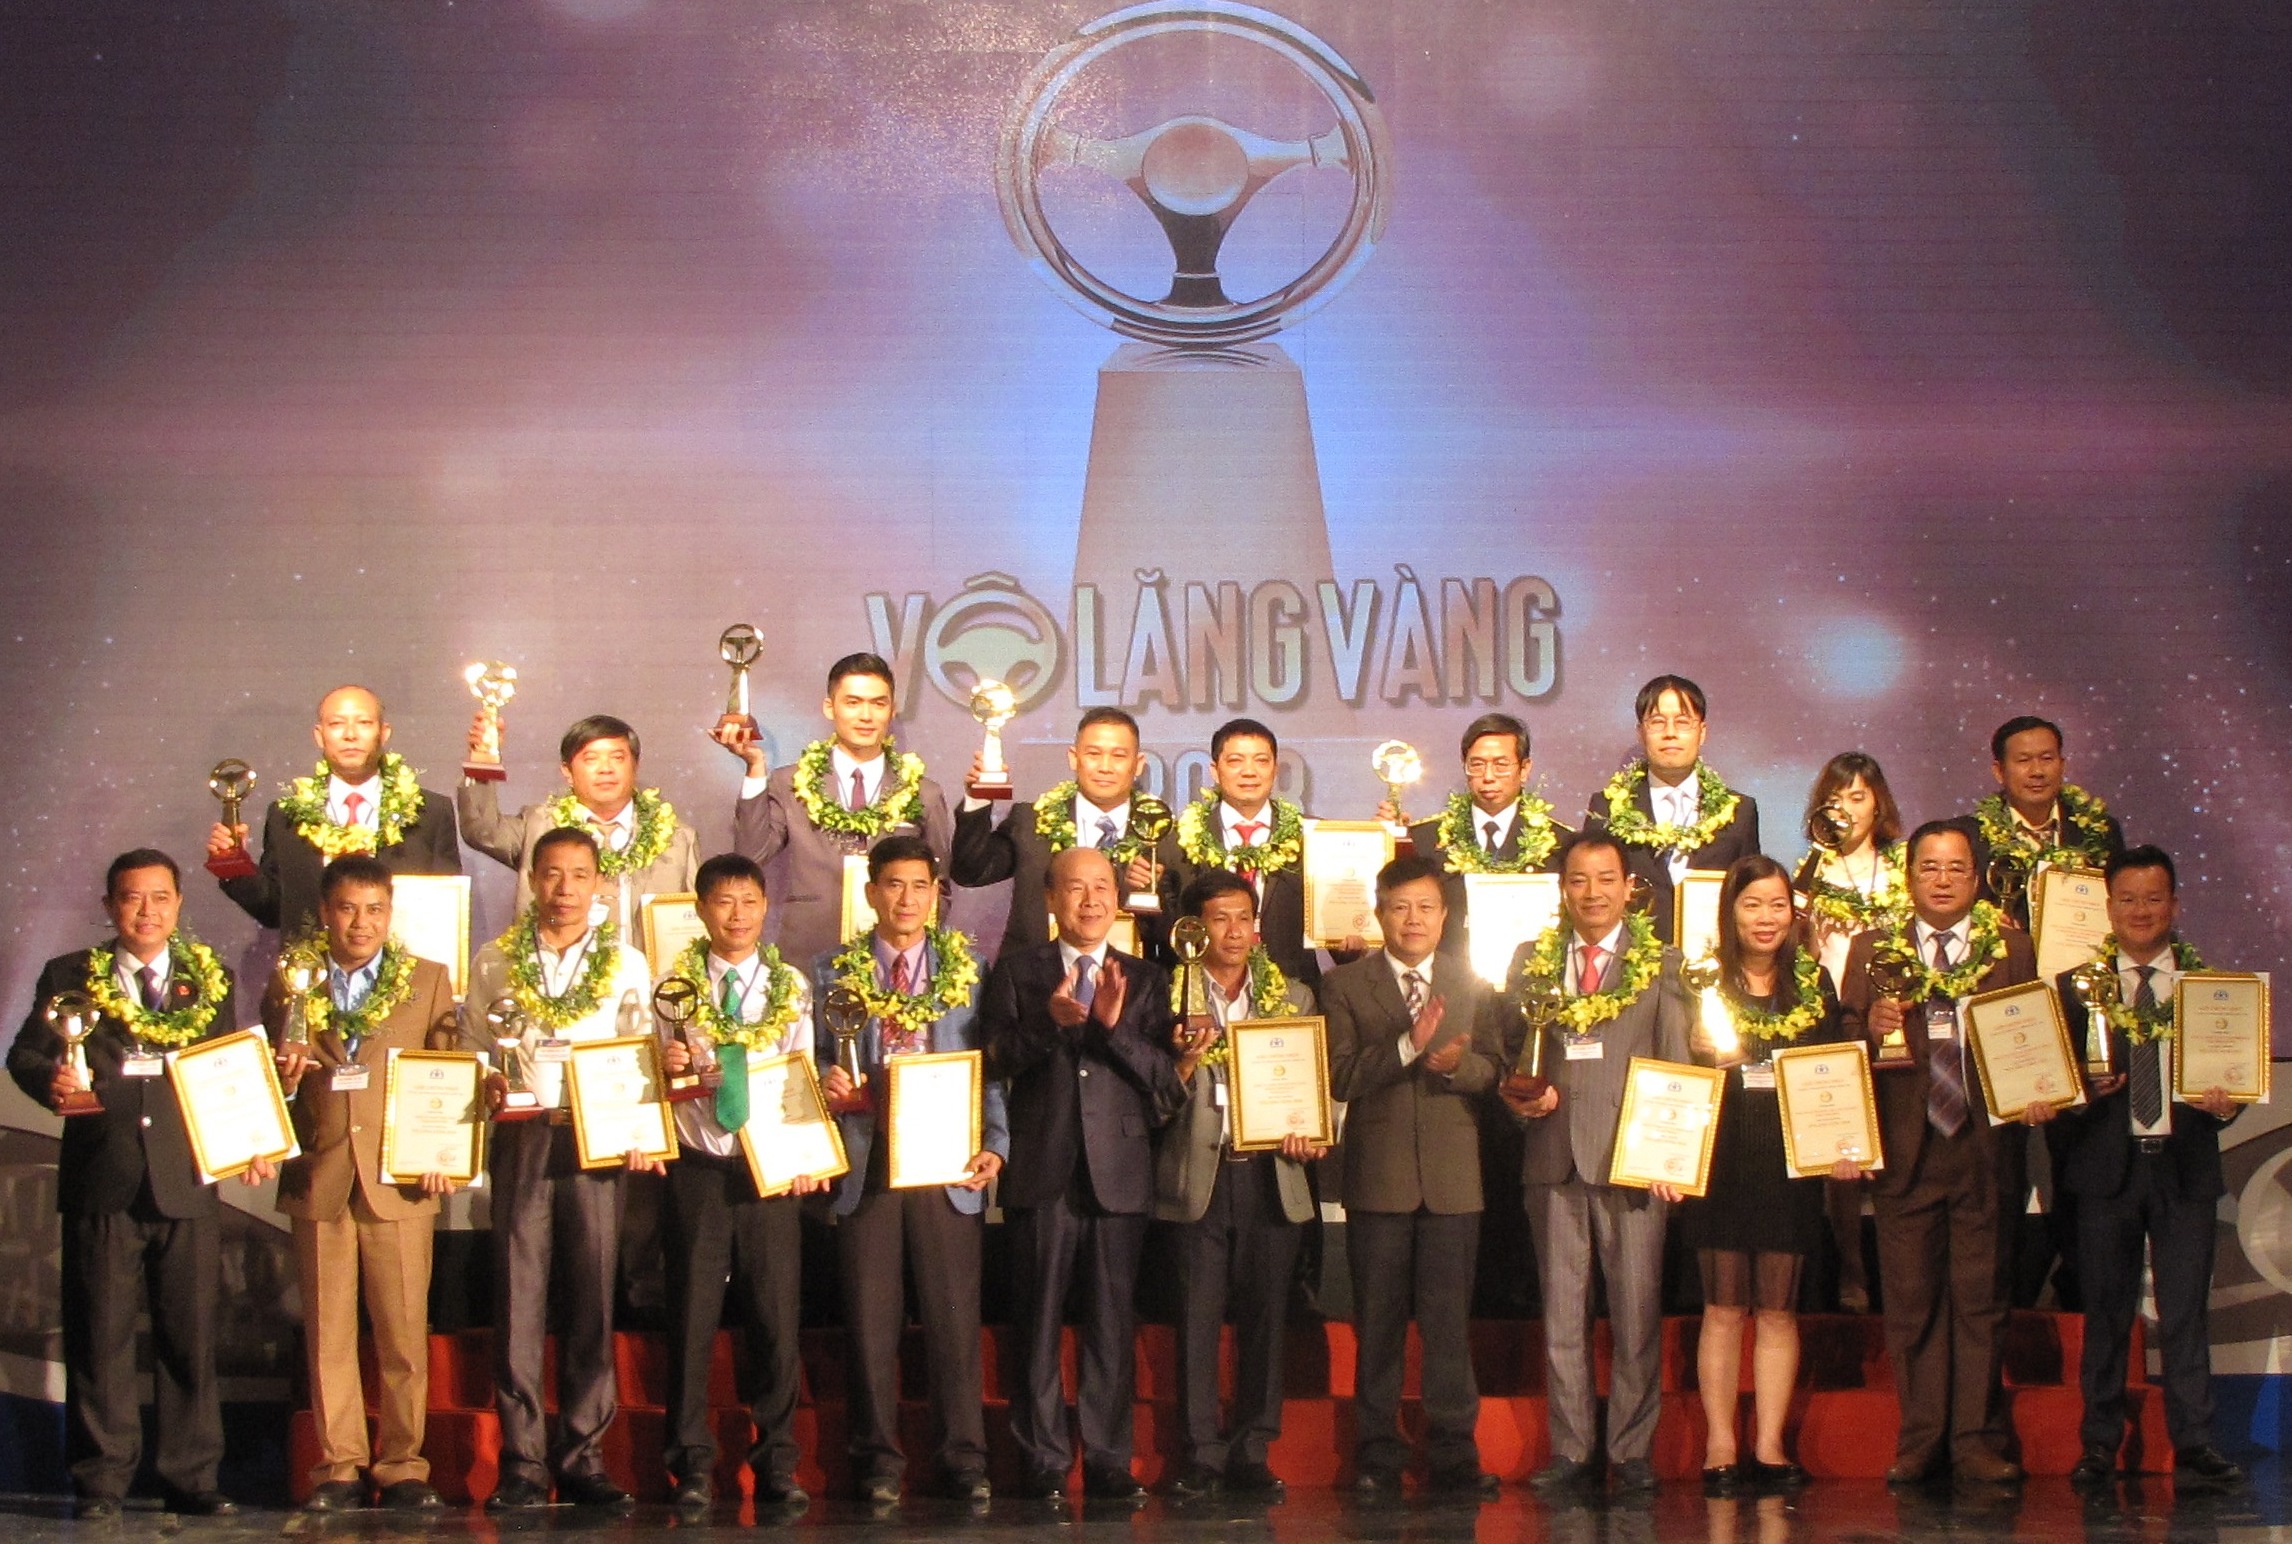 Ban Tổ chức trao giải cho các tập thể đoạt giải “Vô lăng vàng” 2018.